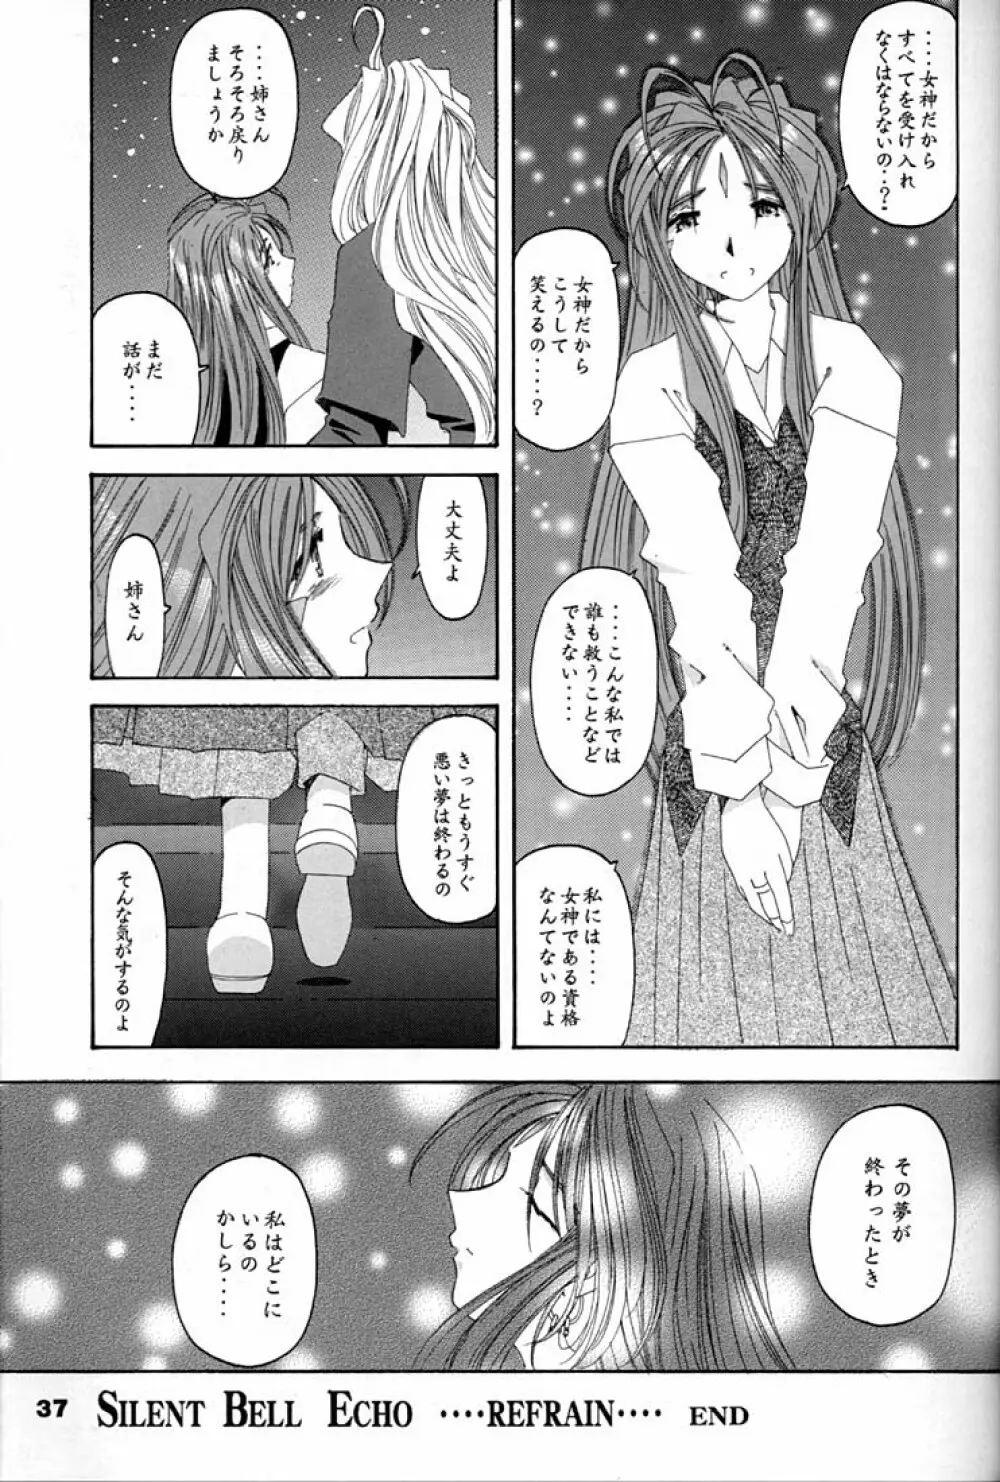 Fujishima Spirits 2 36ページ